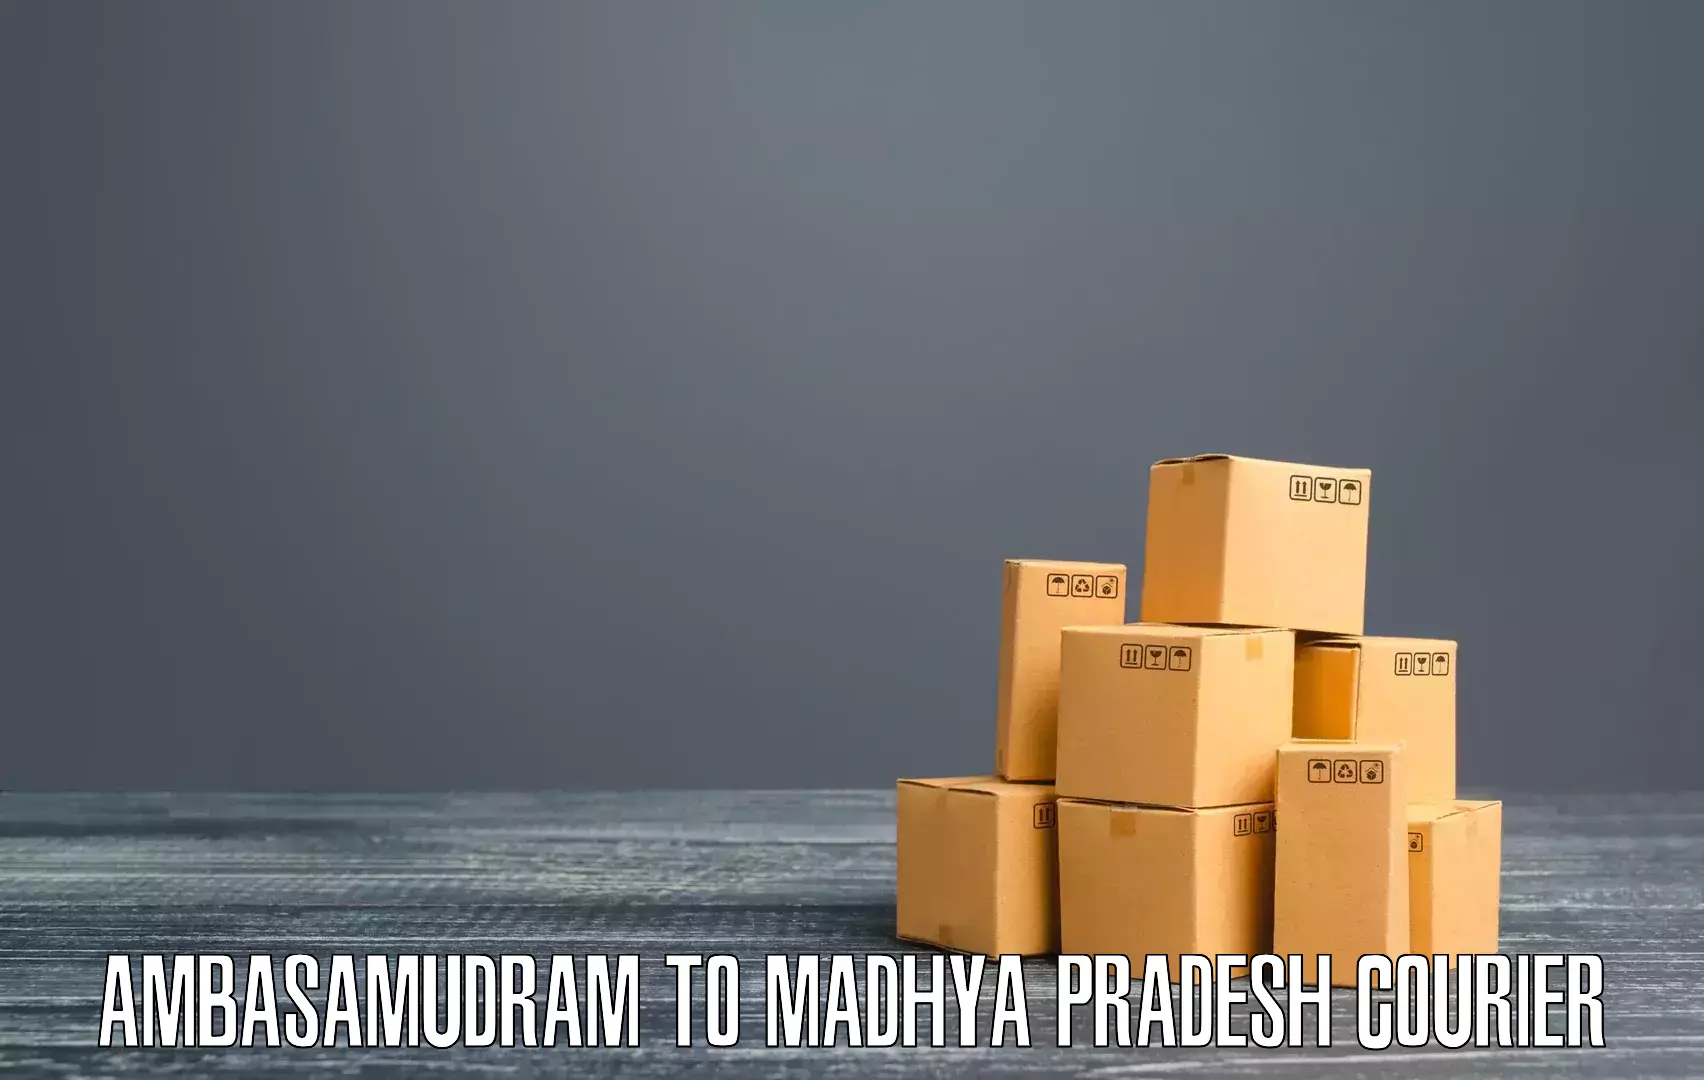 Small business couriers Ambasamudram to Khandwa